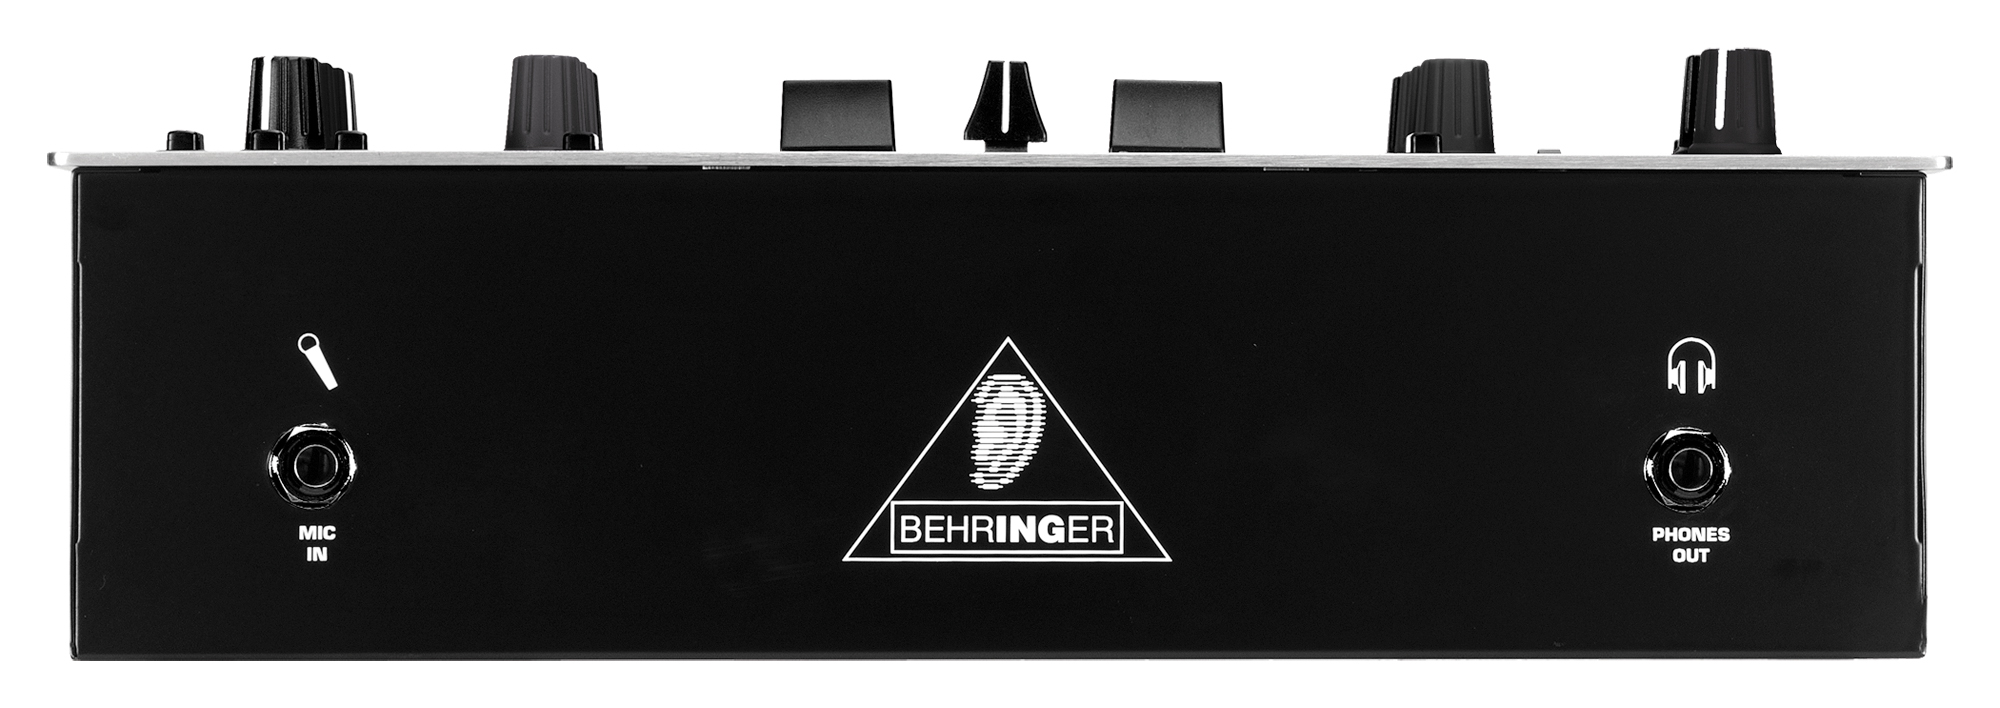 Behringer | Product | DJX400